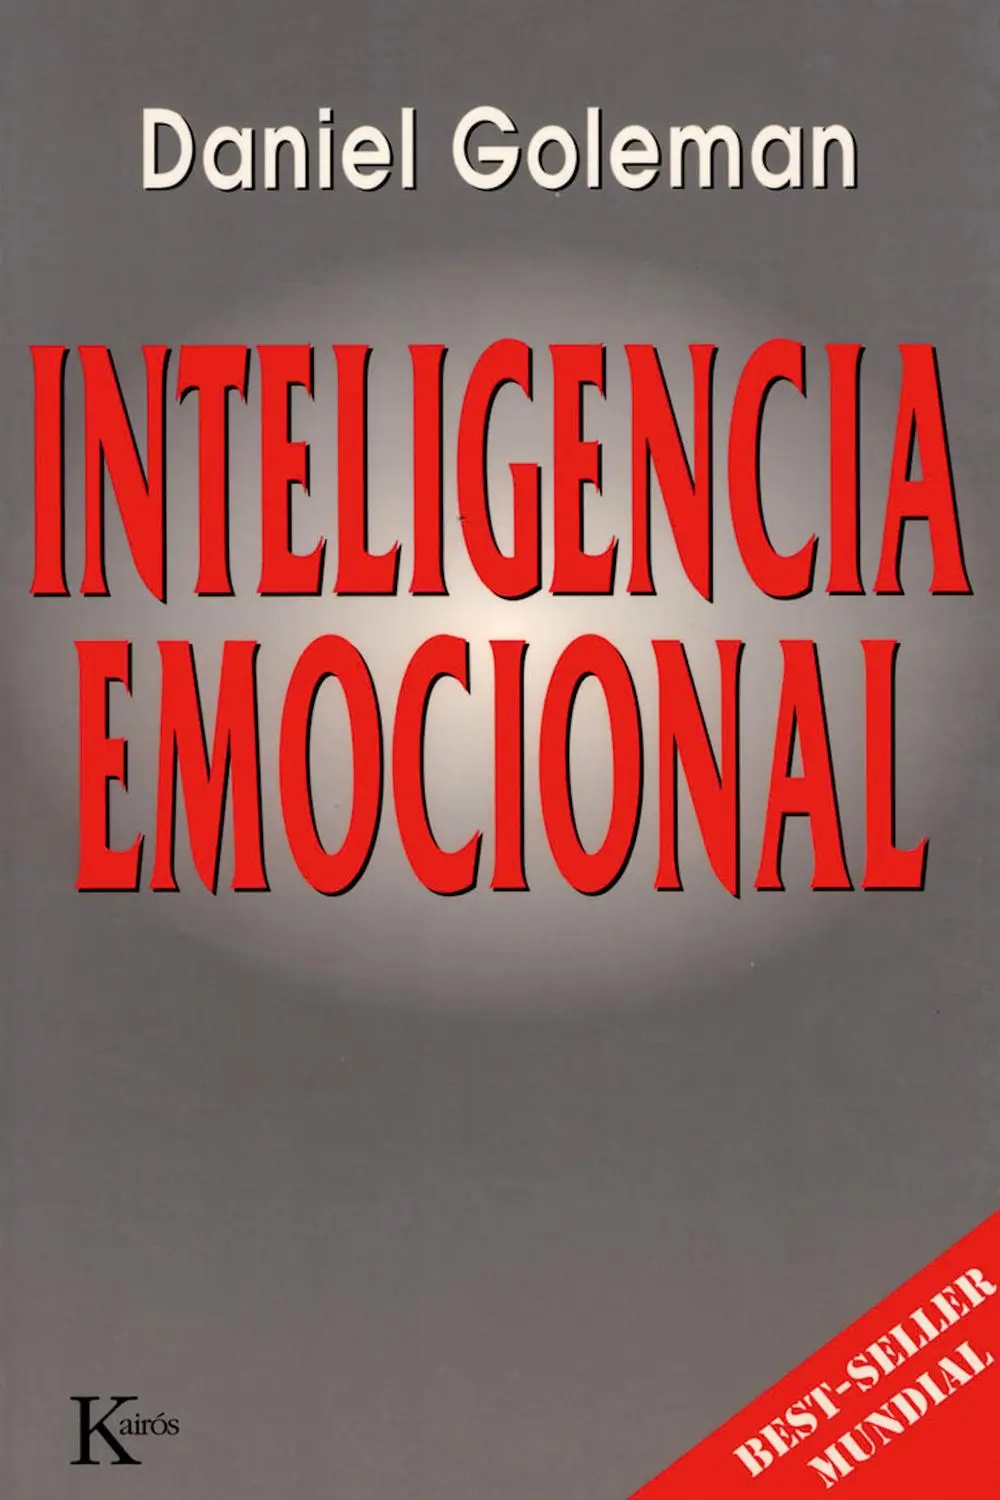 download inteligencia emocional de daniel goleman - Qué es el PDF de inteligencia emocional